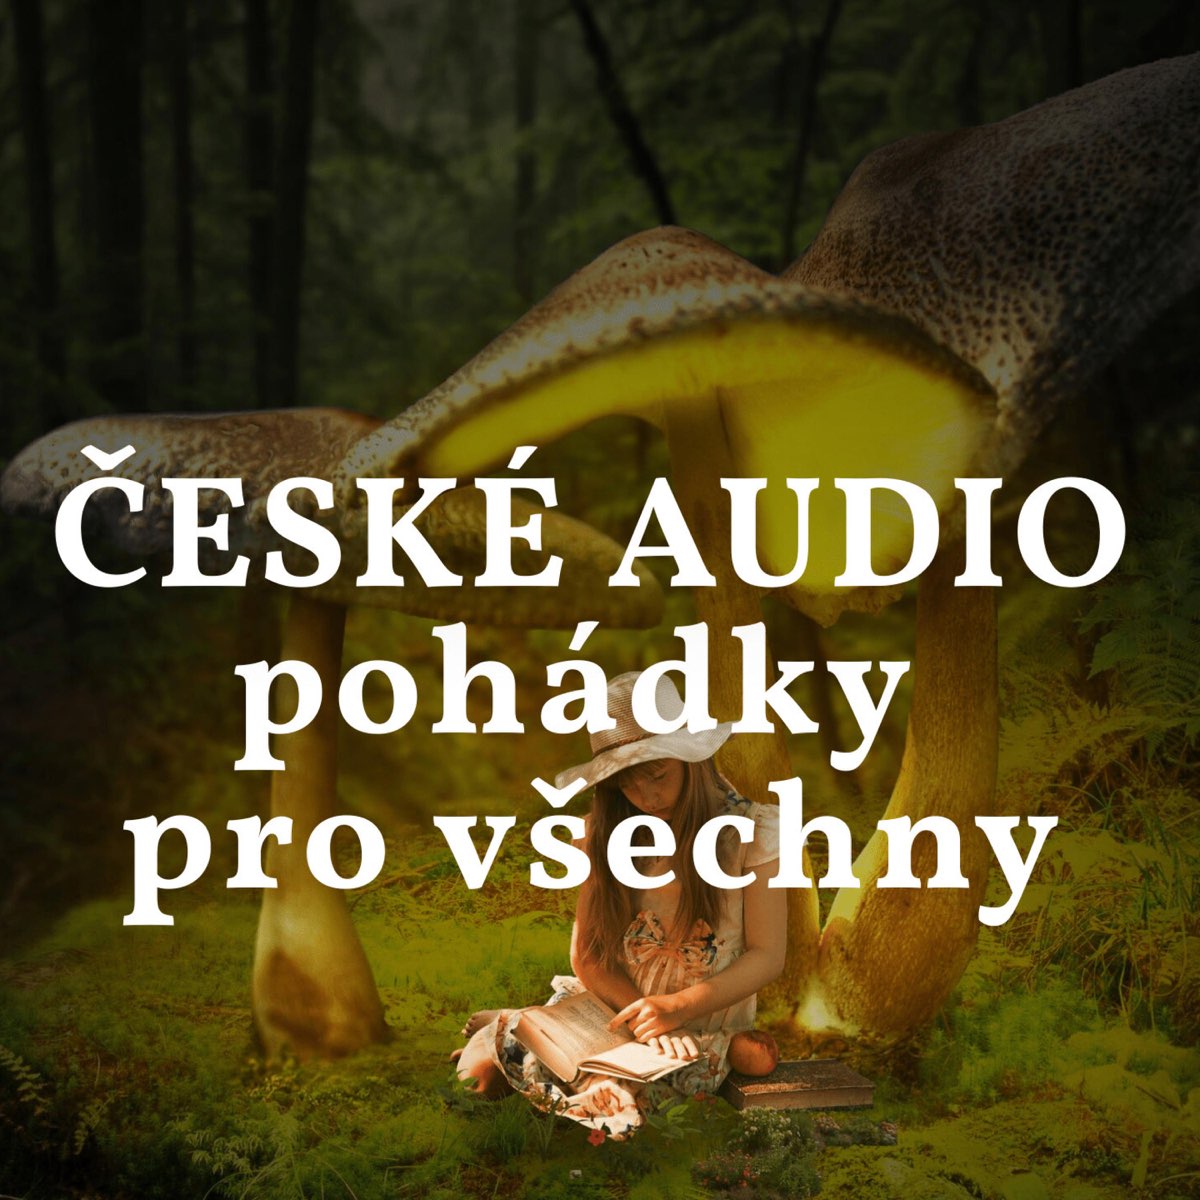 Jak Krtek ke kalhotkám přišel Audio pohádka - EP by České AUDIO pohádky pro  všechny on Apple Music